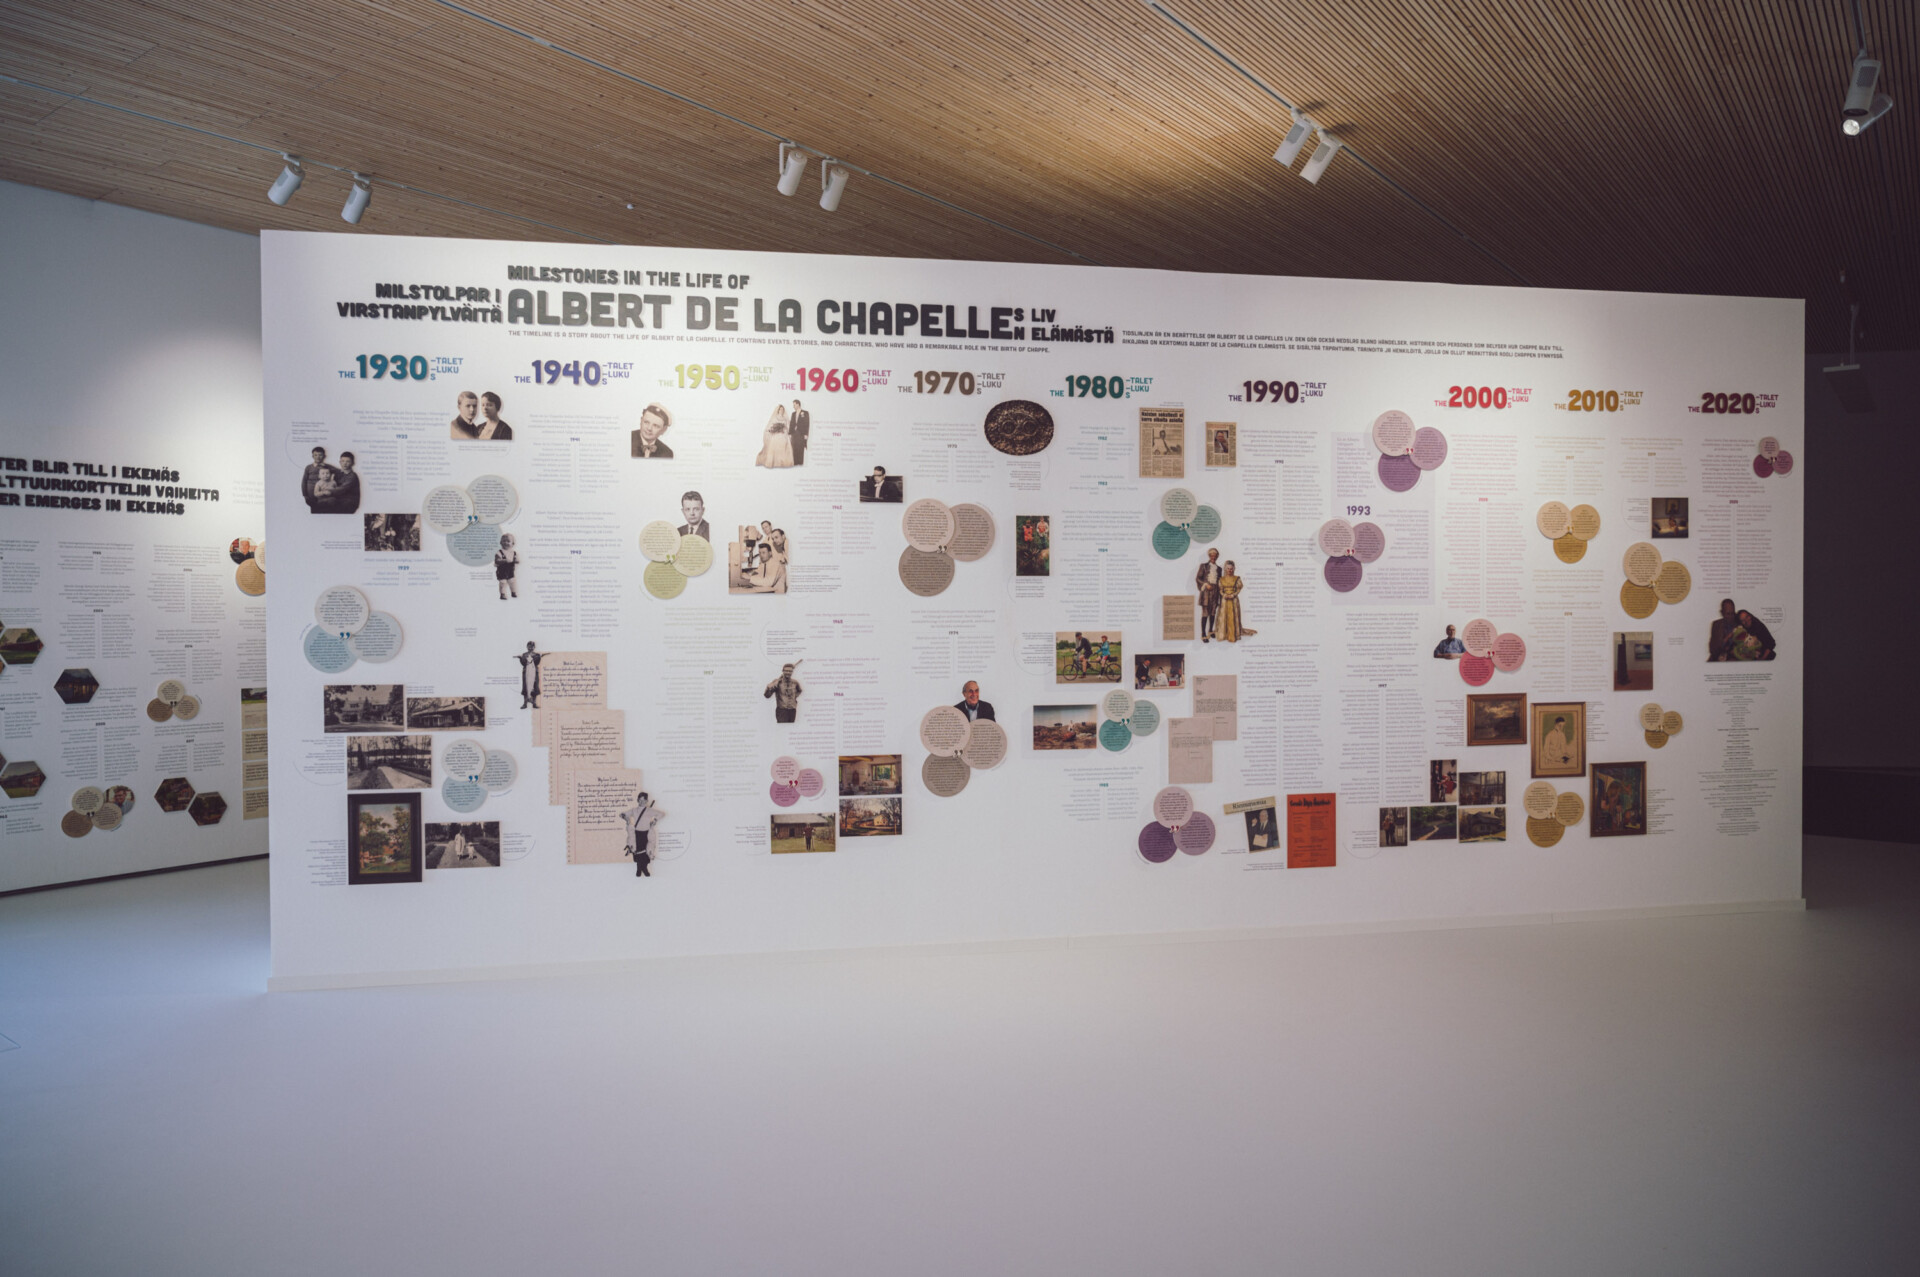 Timeline about Albert de la Chapelles' life